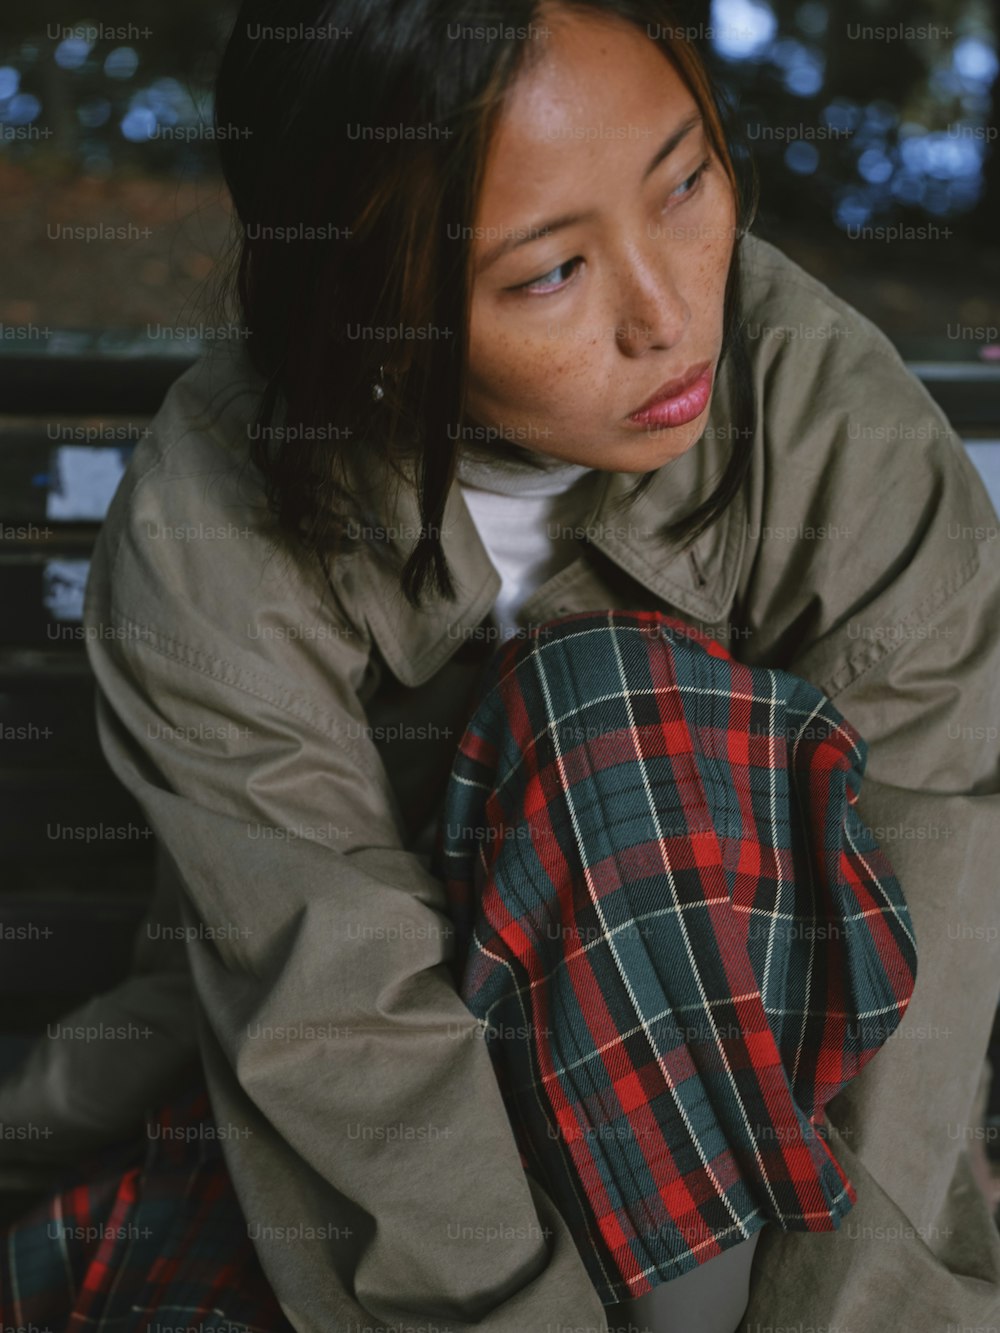 Eine Frau sitzt auf einer Bank und trägt ein kariertes Hemd